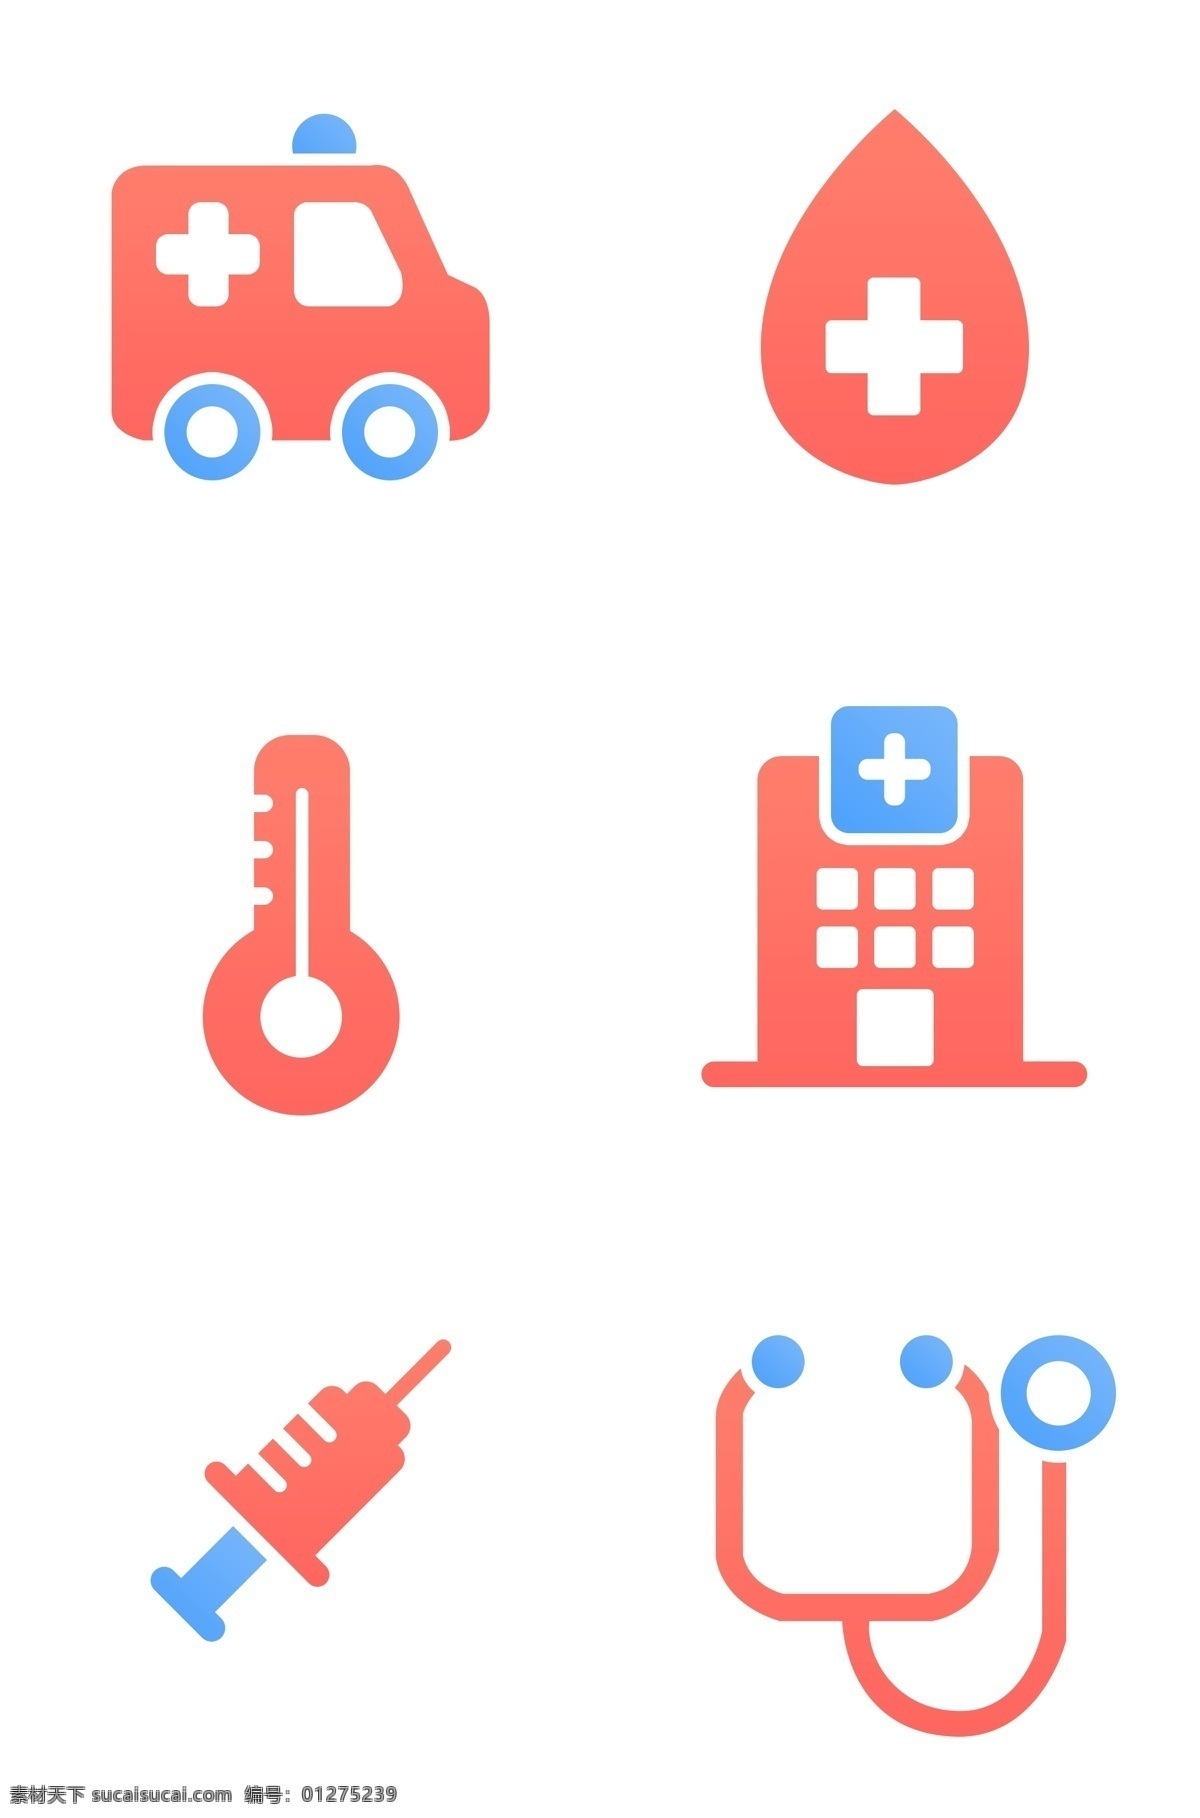 医疗 相关 免 扣 图标素材 扁平化 插画 矢量 图标 卡通的 可爱的 撞色的 有趣的 医疗相关 救护车 医院 针筒